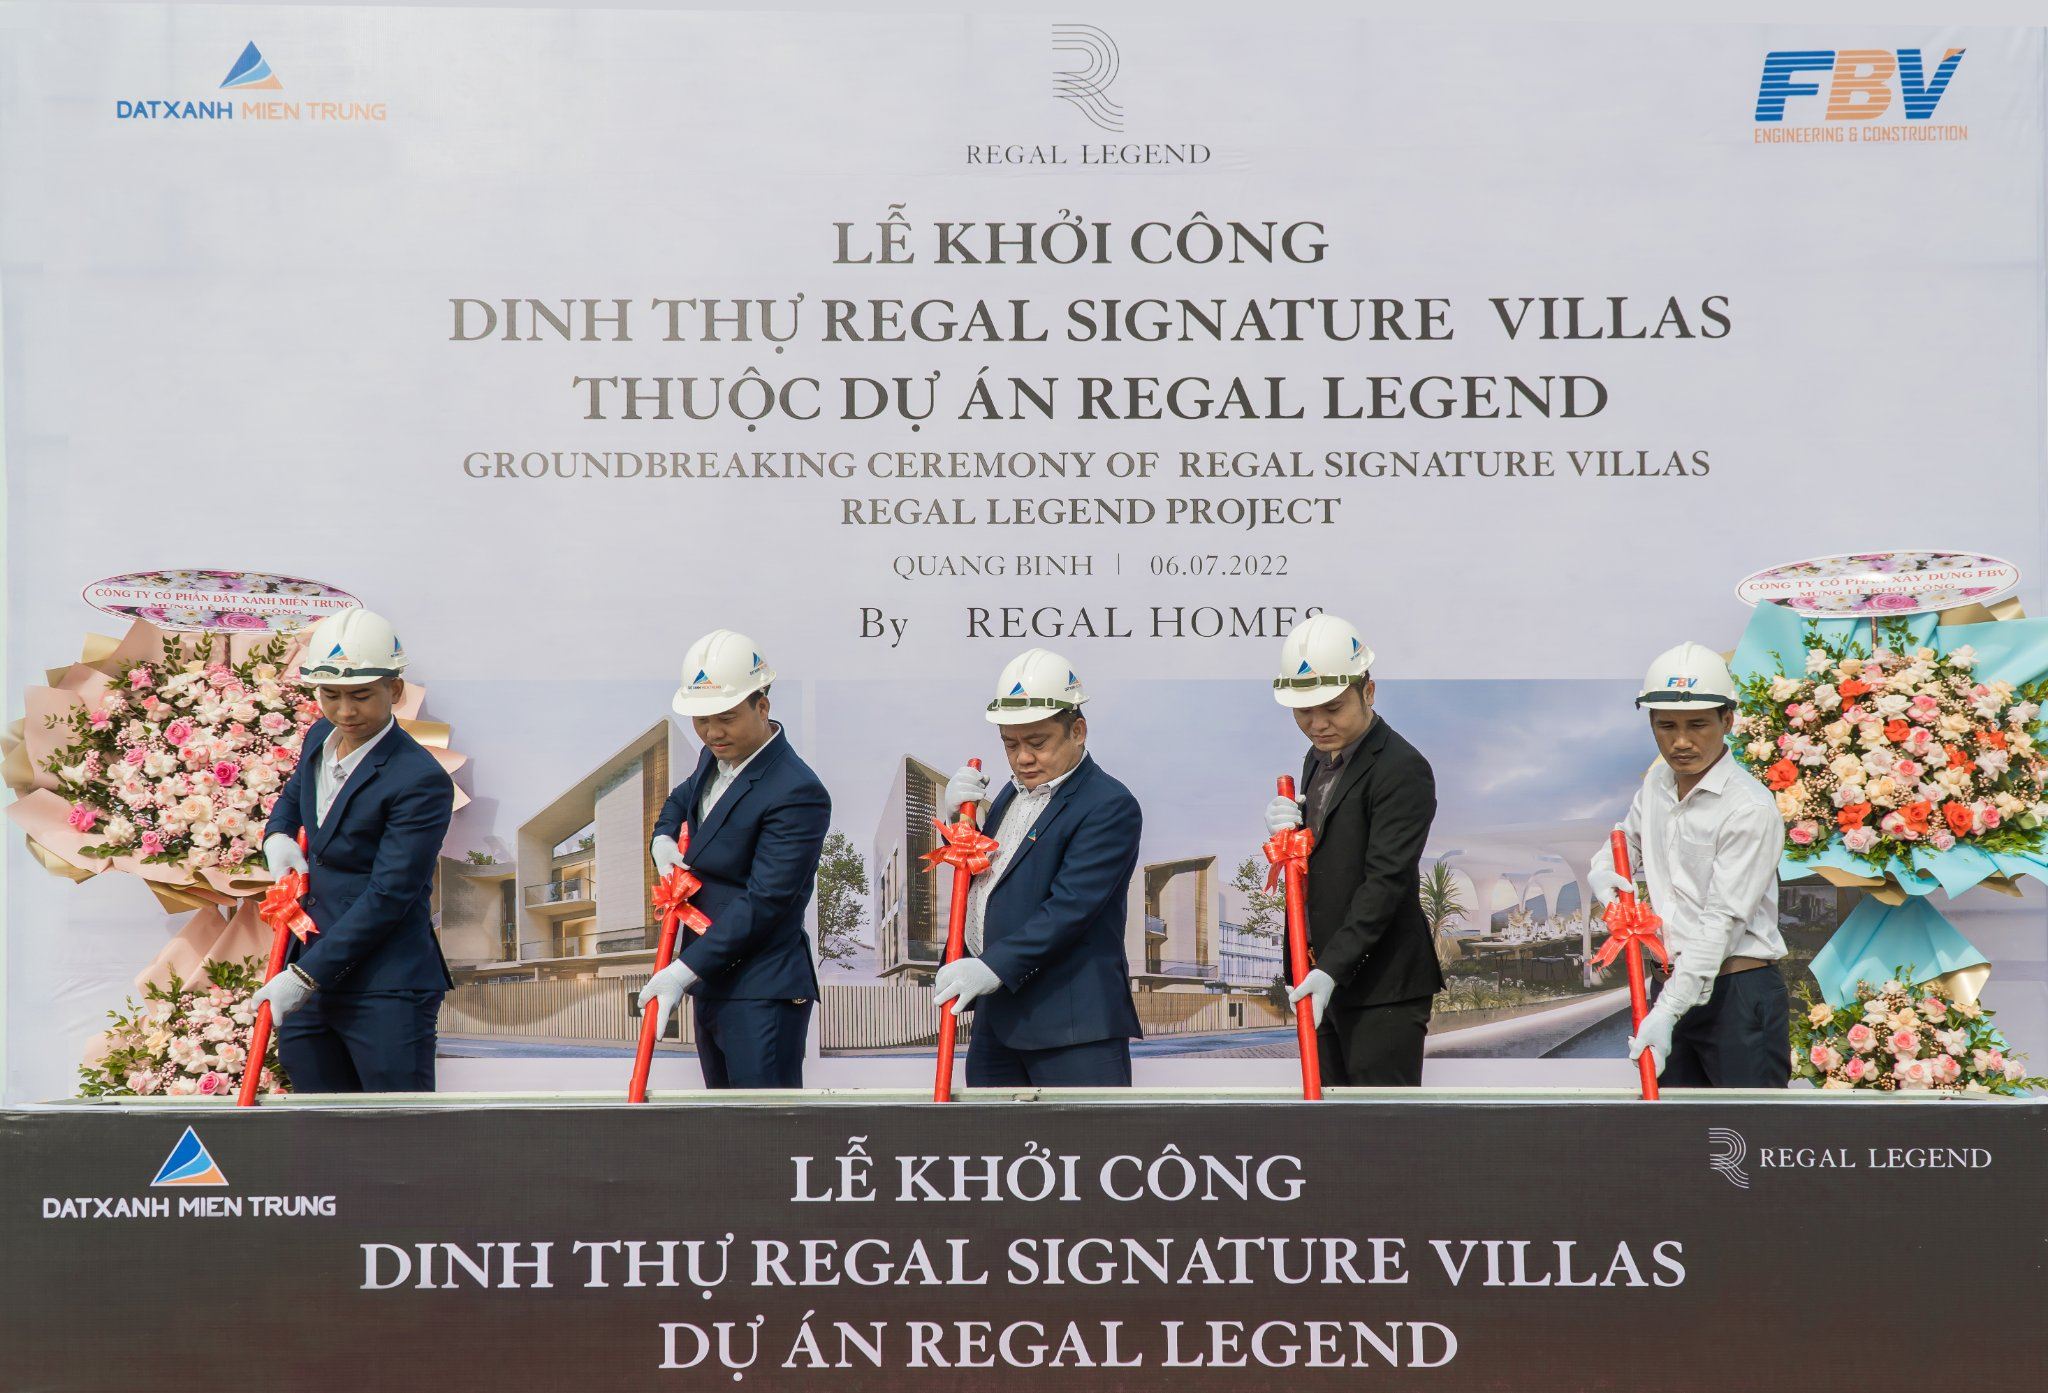 Dự án Regal Legend đồng loạt khởi công, khai trương lễ hội và ra mắt ở Singapore - Viet Nam Smart City